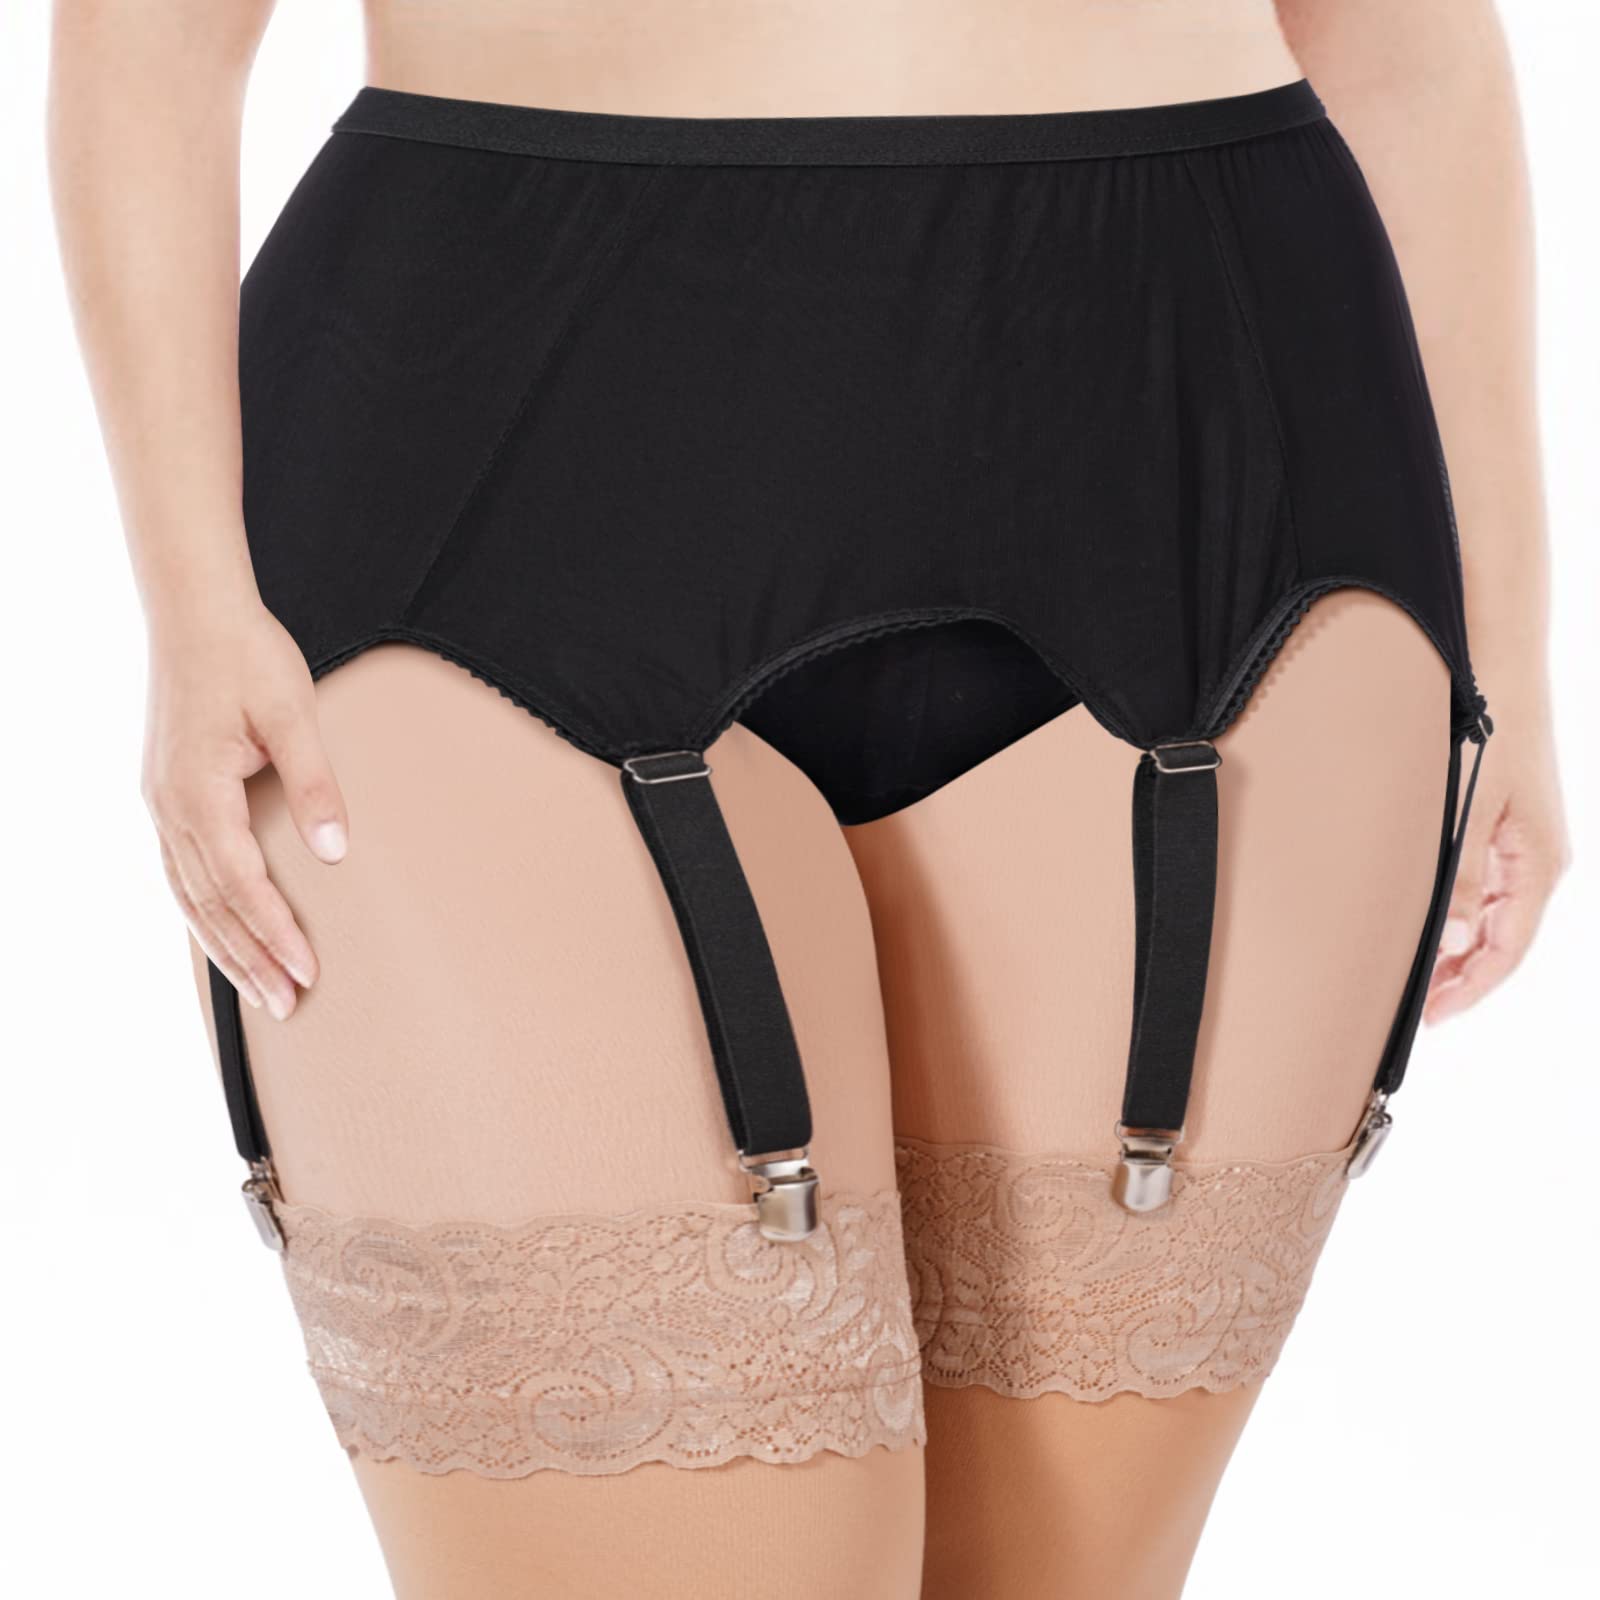 Garter Belt for Thigh Highs | Mesh High Waisted Garter Belt Lingerie for  Women 6 Straps | Stockings Not Included